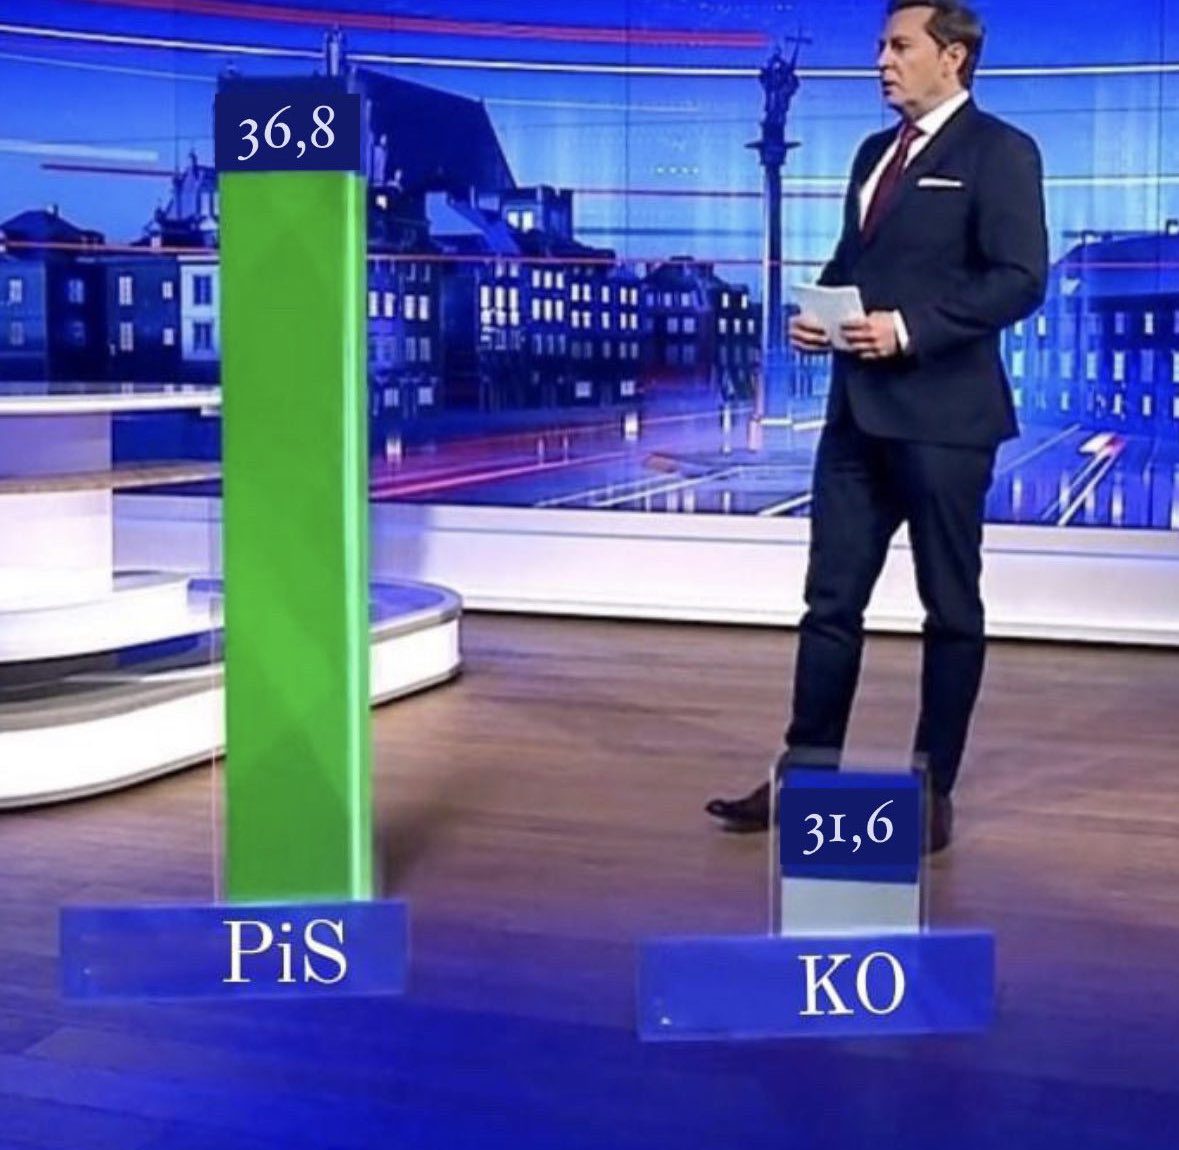 Mem przedstawiający prezentera „Wiadomości” TVP1 omawiającego wykres słupkowy, na którym przedstawiono wyniki exit poll dla PiS i KO.